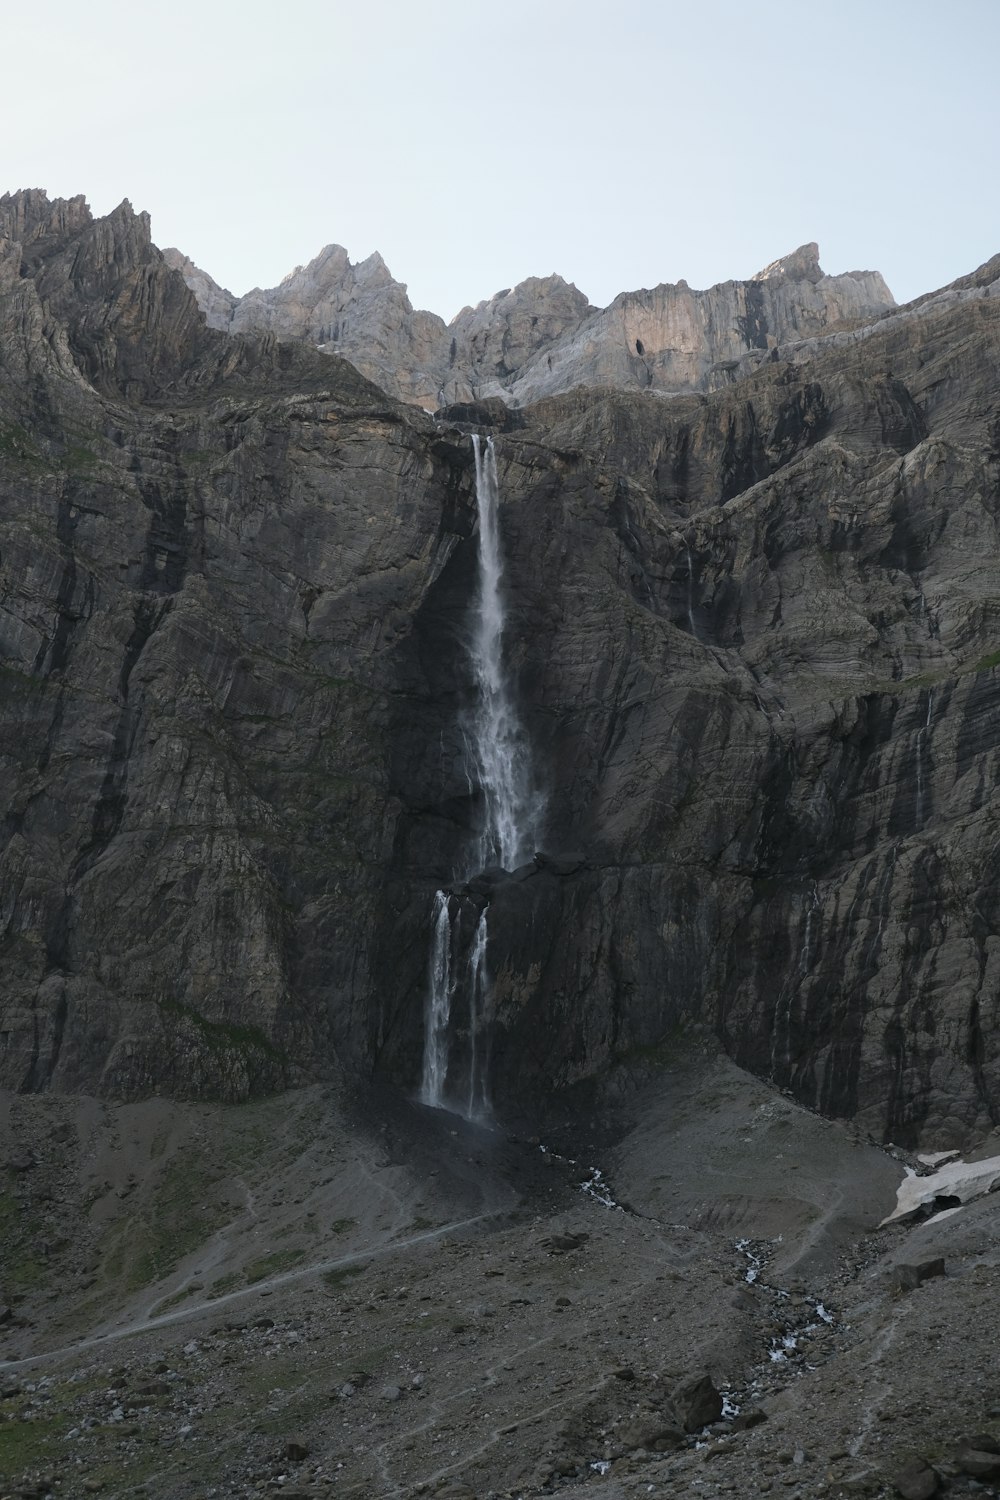 cachoeiras no meio das montanhas rochosas